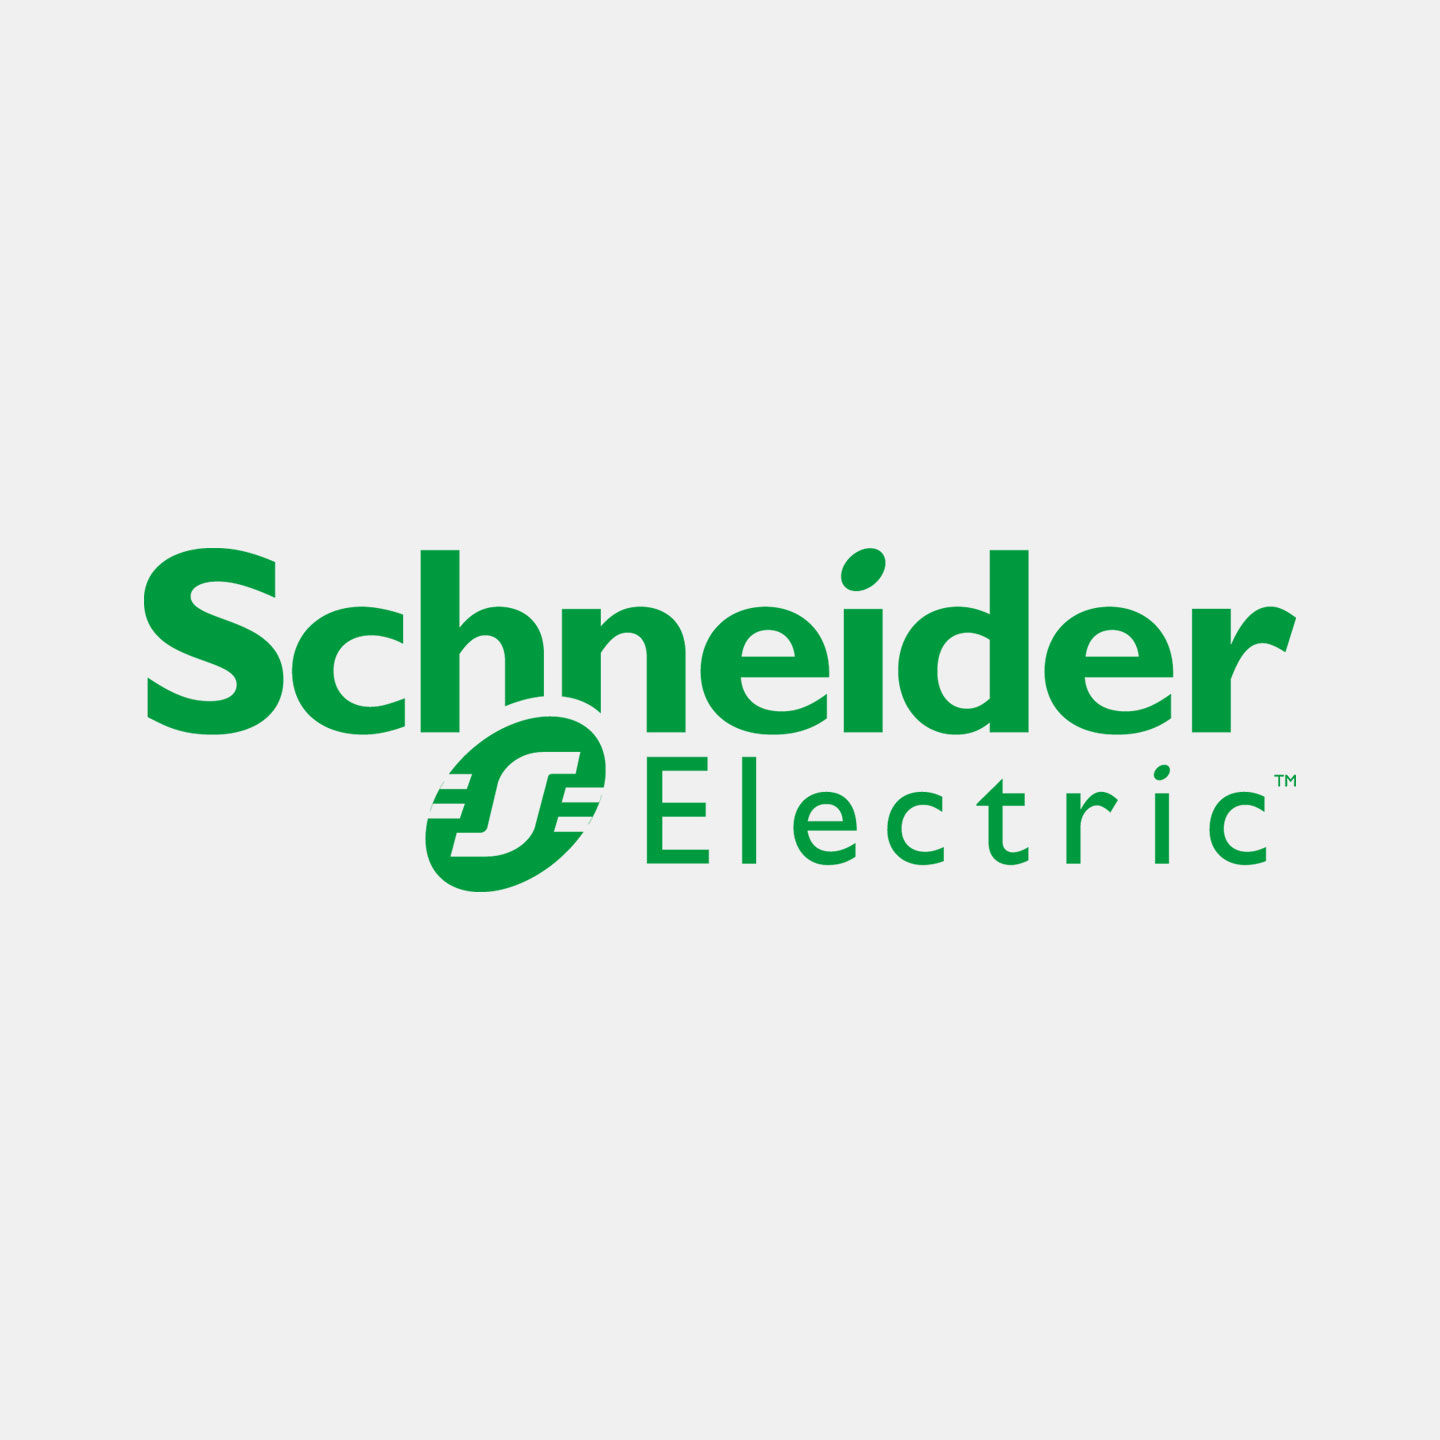 Het logo van POWARE Industrial Automation klant Schneider